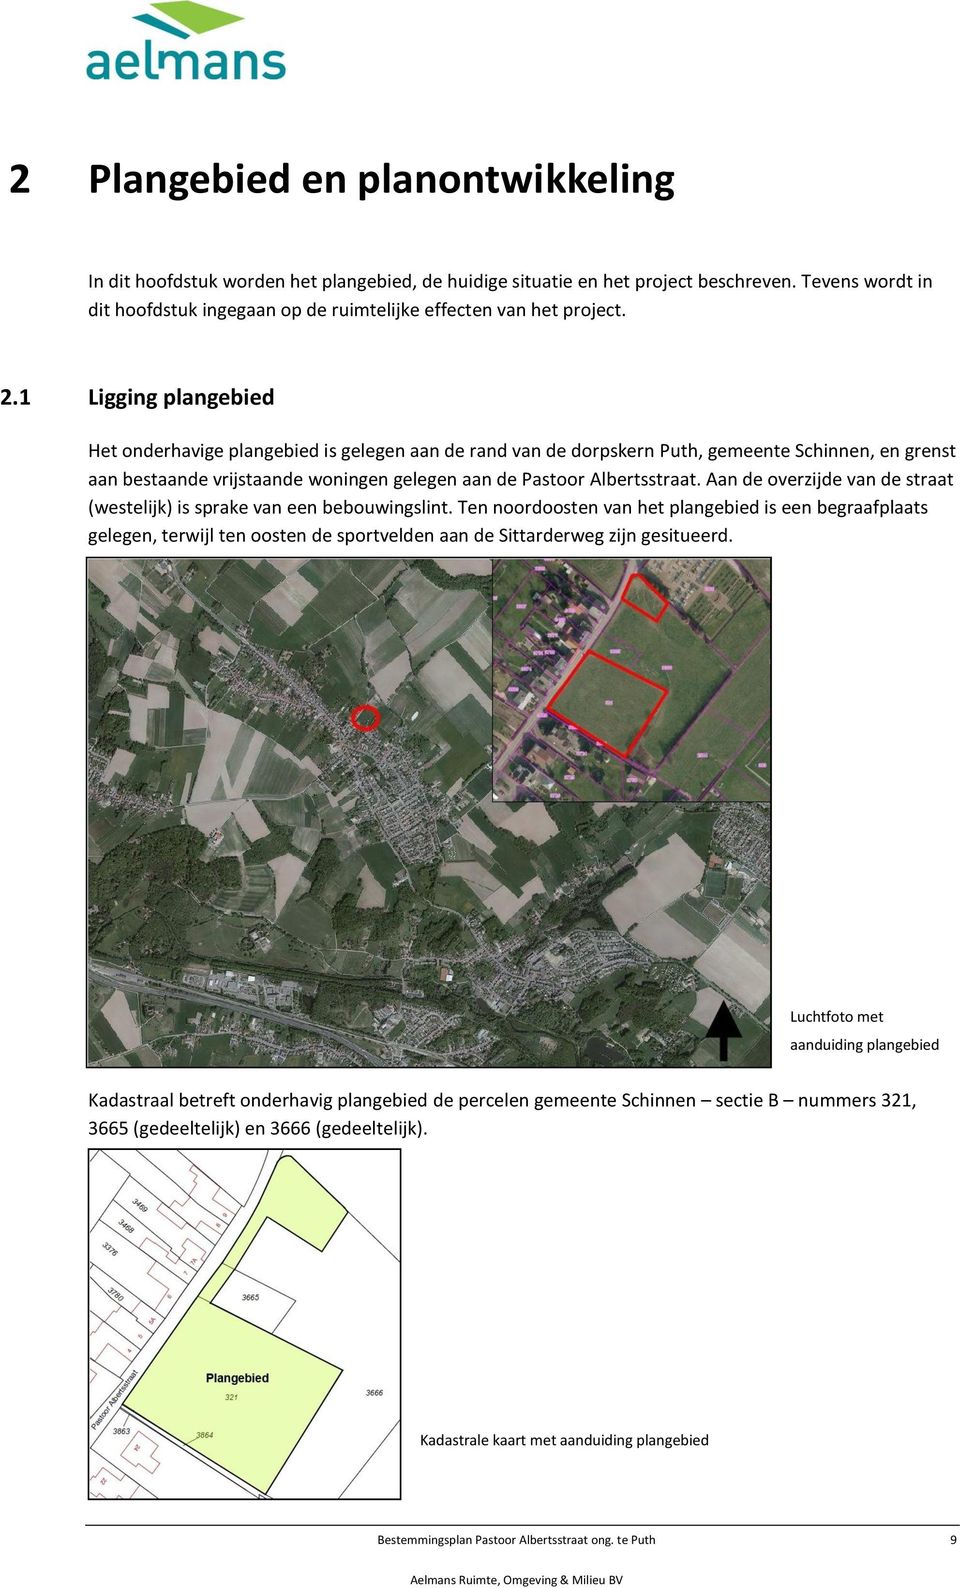 1 Ligging plangebied Het onderhavige plangebied is gelegen aan de rand van de dorpskern Puth, gemeente Schinnen, en grenst aan bestaande vrijstaande woningen gelegen aan de Pastoor Albertsstraat.